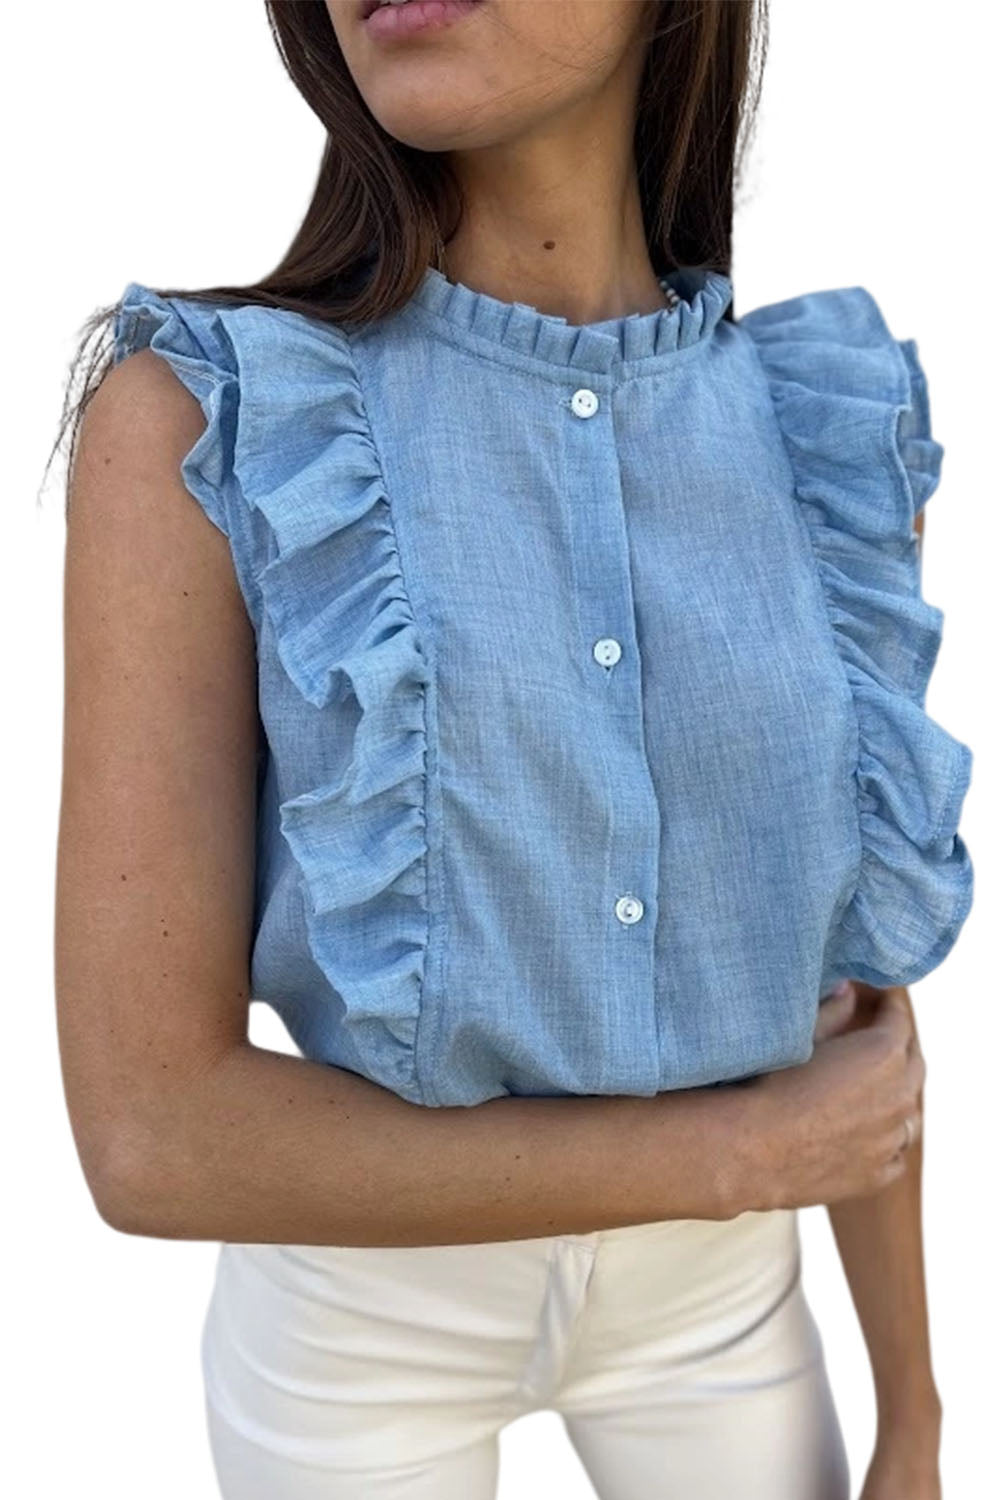 Sky Blue Ruffle Trim Soft Lightweight Sleeveless Shirt Tank Tops JT's Designer Fashion